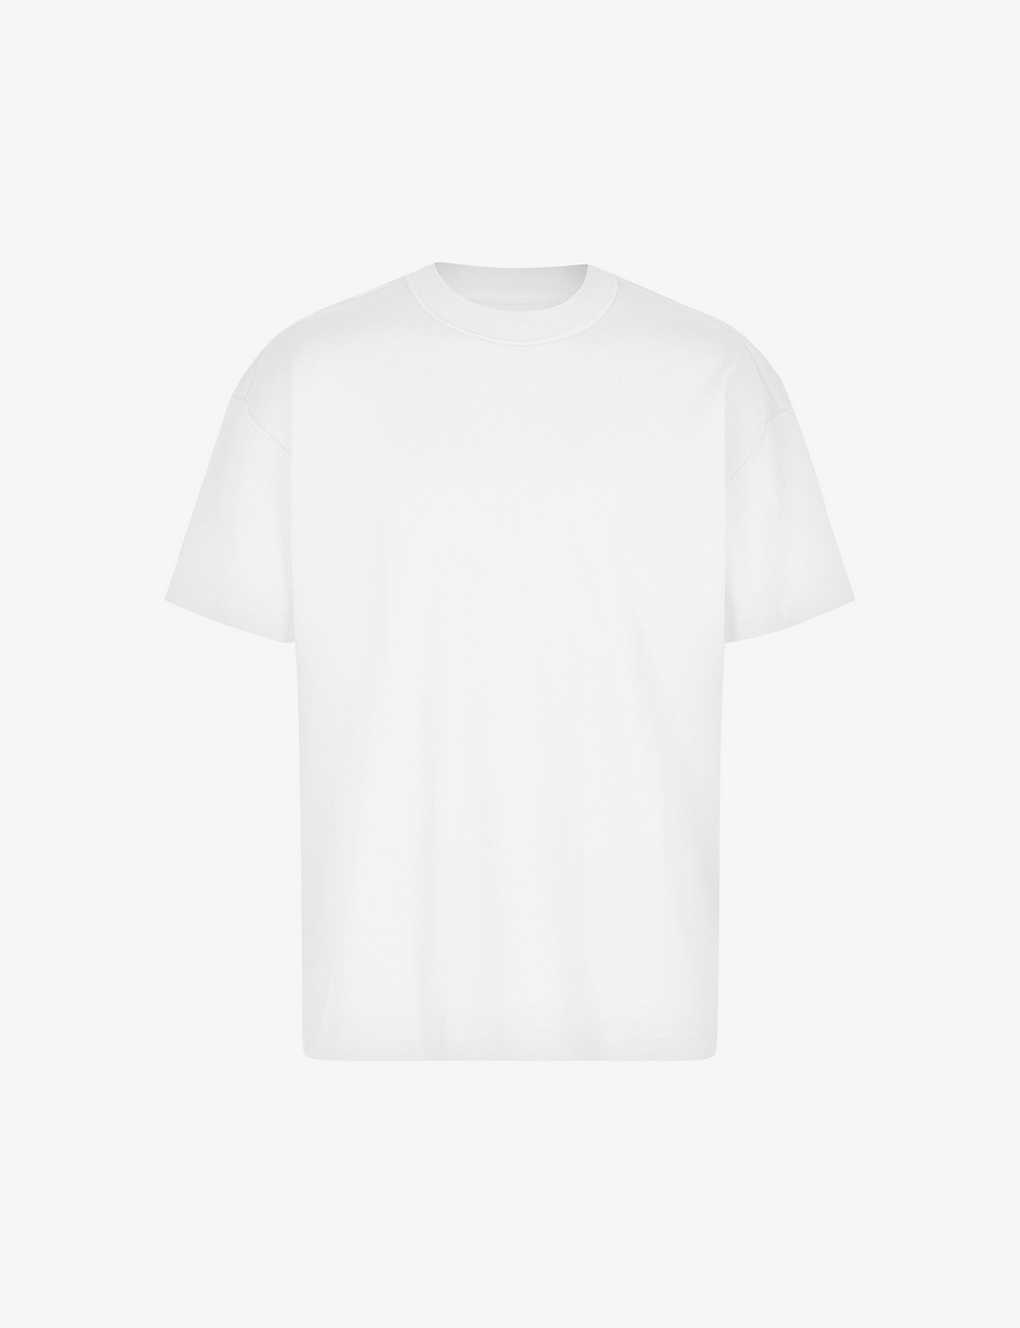 Shop Allsaints Men's Optic White Isac Oversized Crewneck Cotton T-shirt